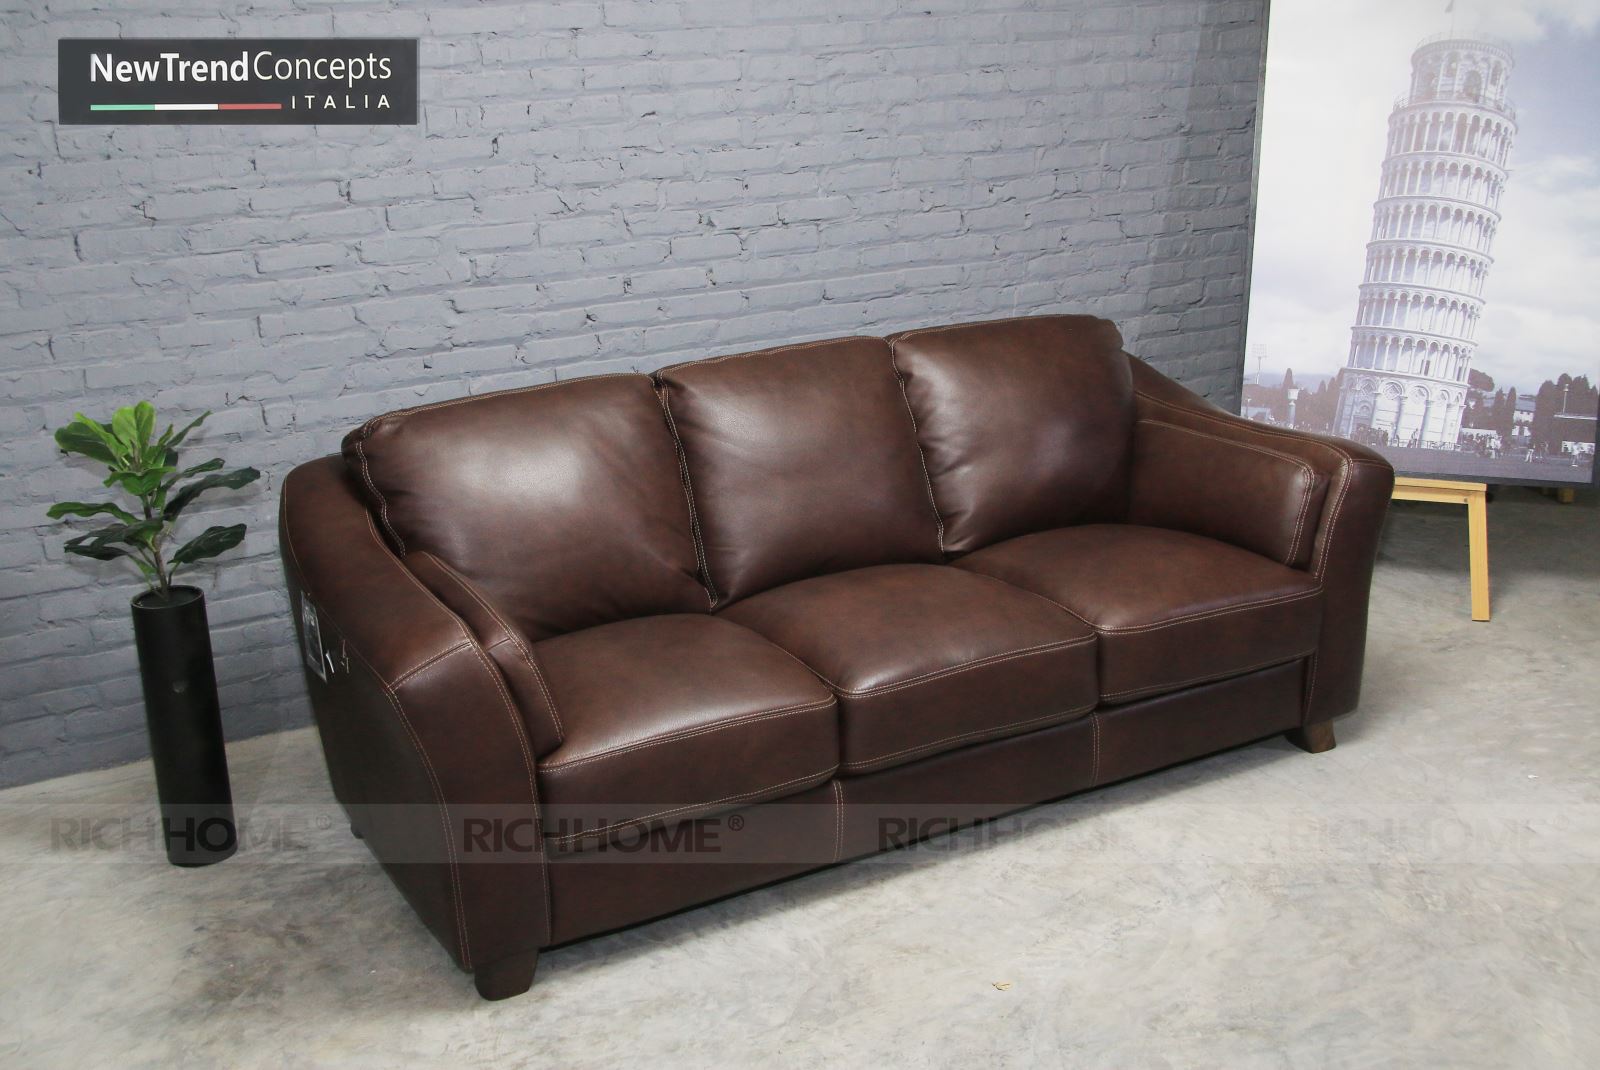 Những mẫu ghế sofa da nhập khẩu Italia đẹp, sang trọng - Ảnh 3